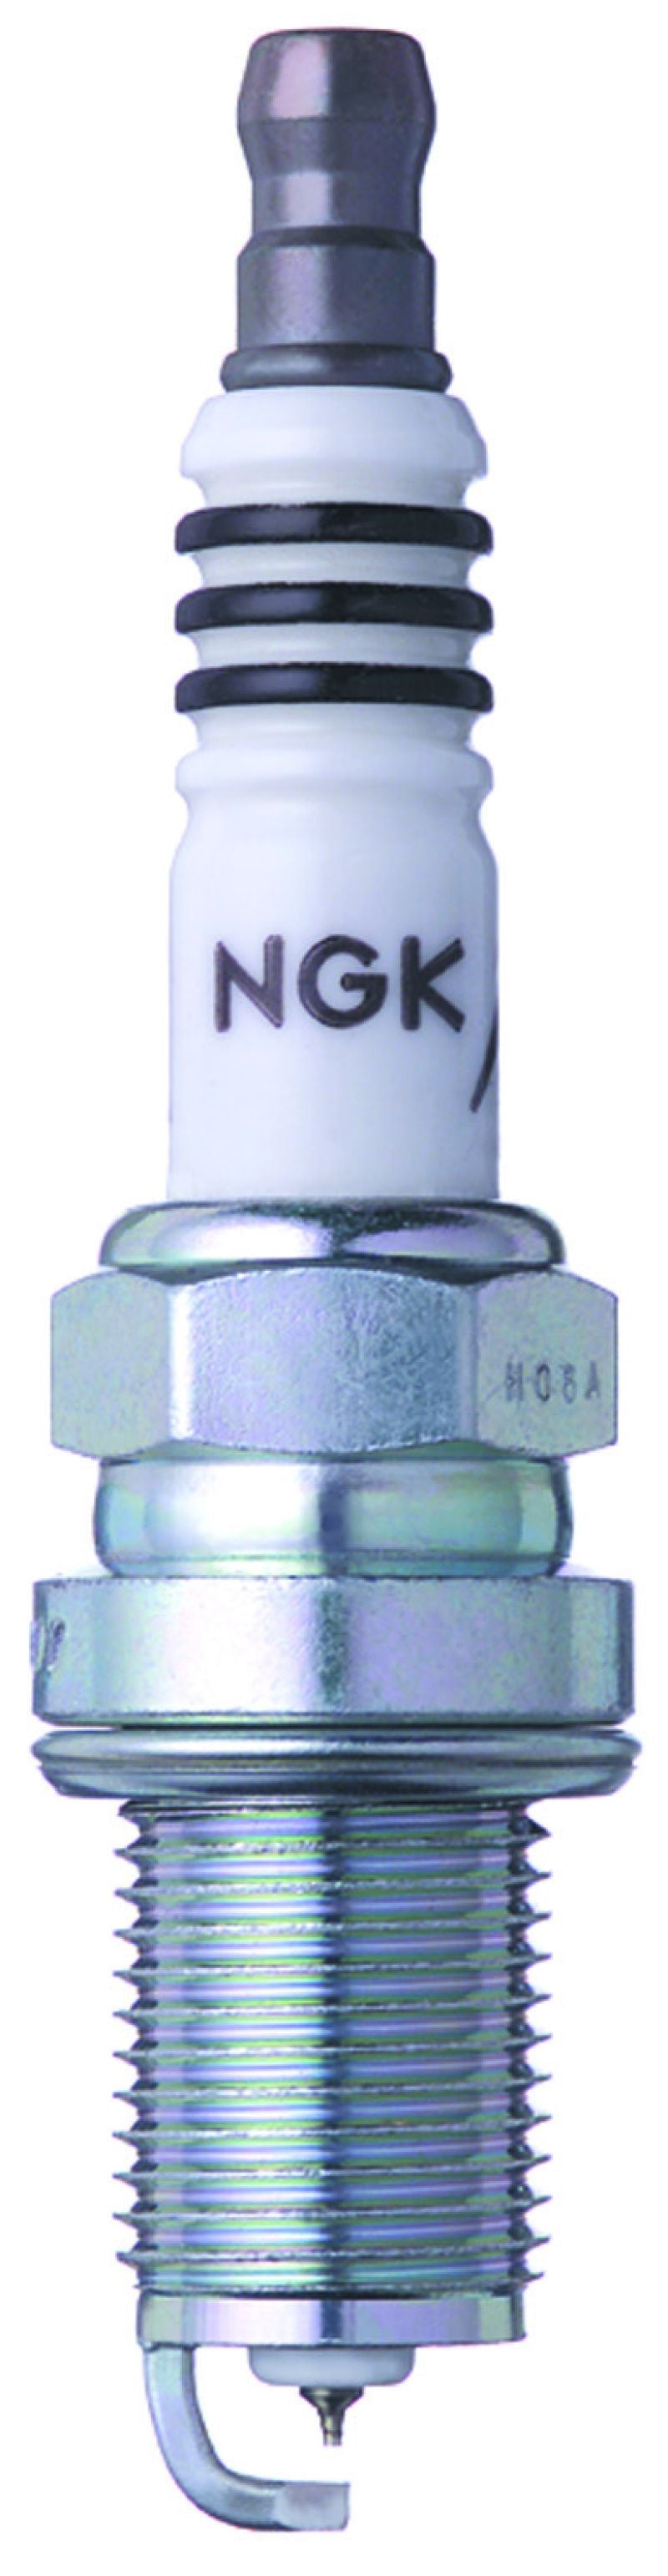 NGK Iridium Spark Plugs BKR7EIX-11 (set of 4 plugs)